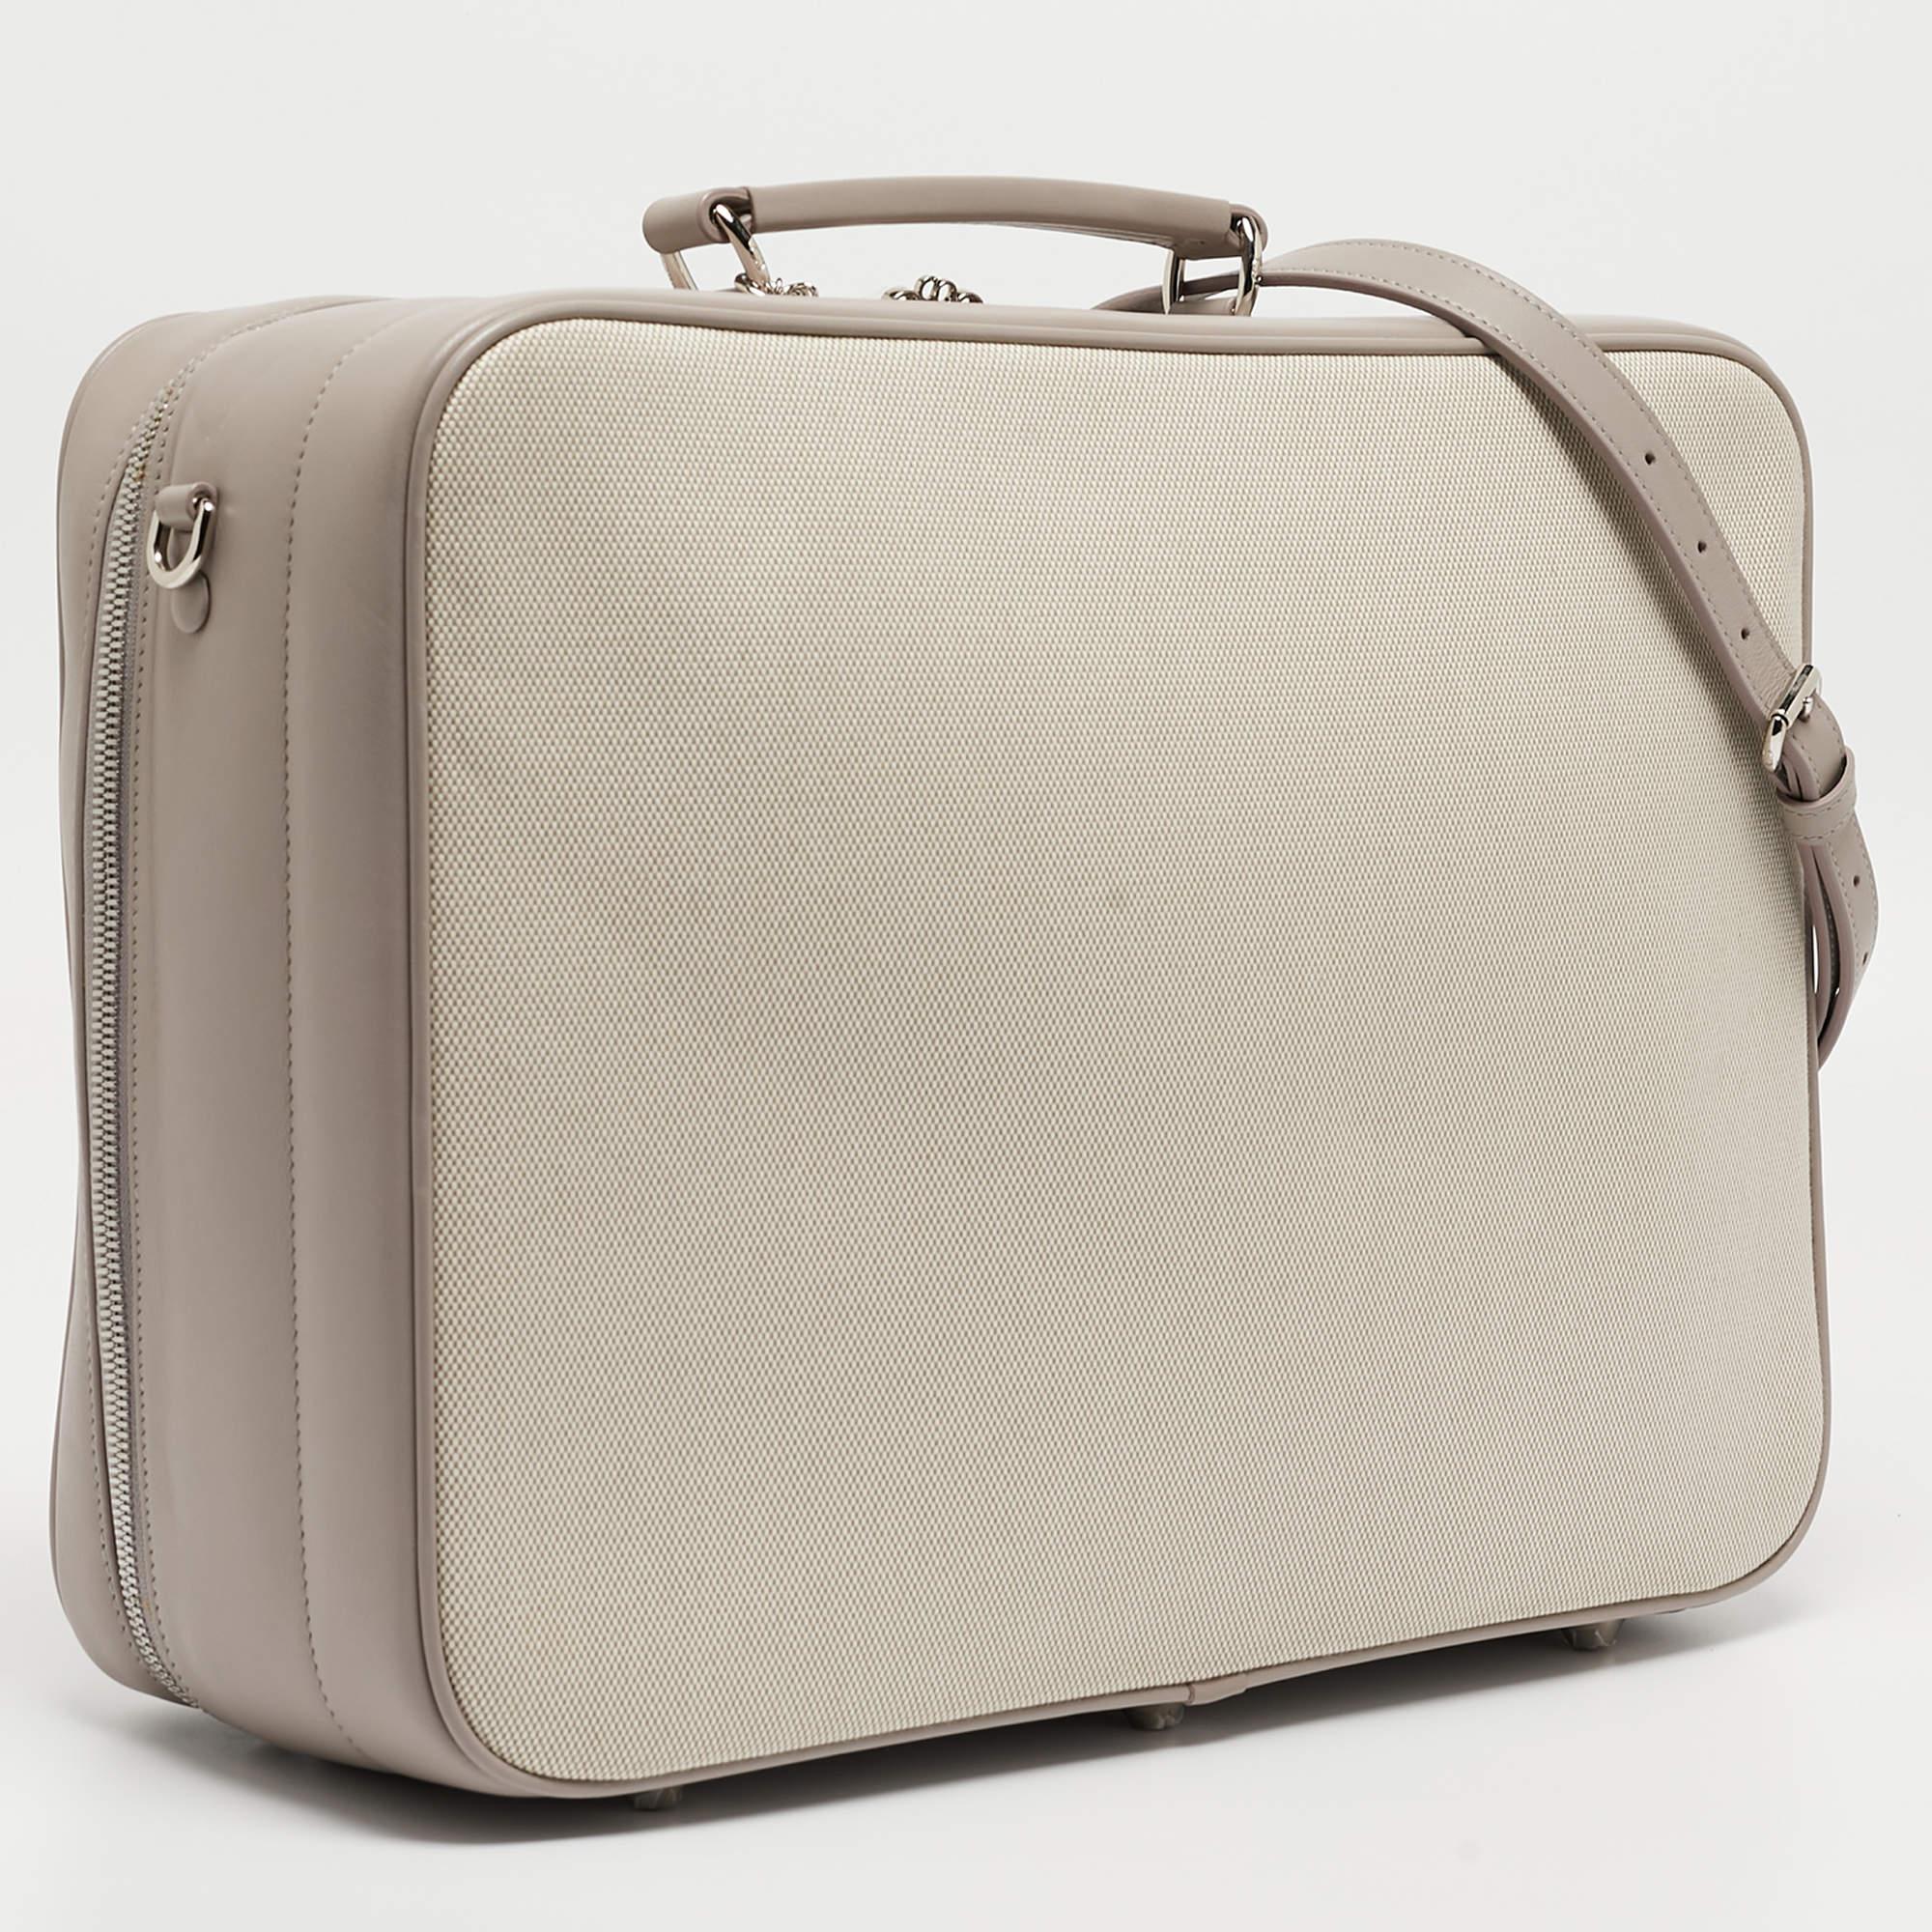 La valise à langer Dior respire l'élégance avec sa fusion sophistiquée de toile beige et de touches de cuir lilas. L'intérieur spacieux est conçu pour une organisation efficace, tandis que le logo emblématique de Dior ajoute une touche de luxe.